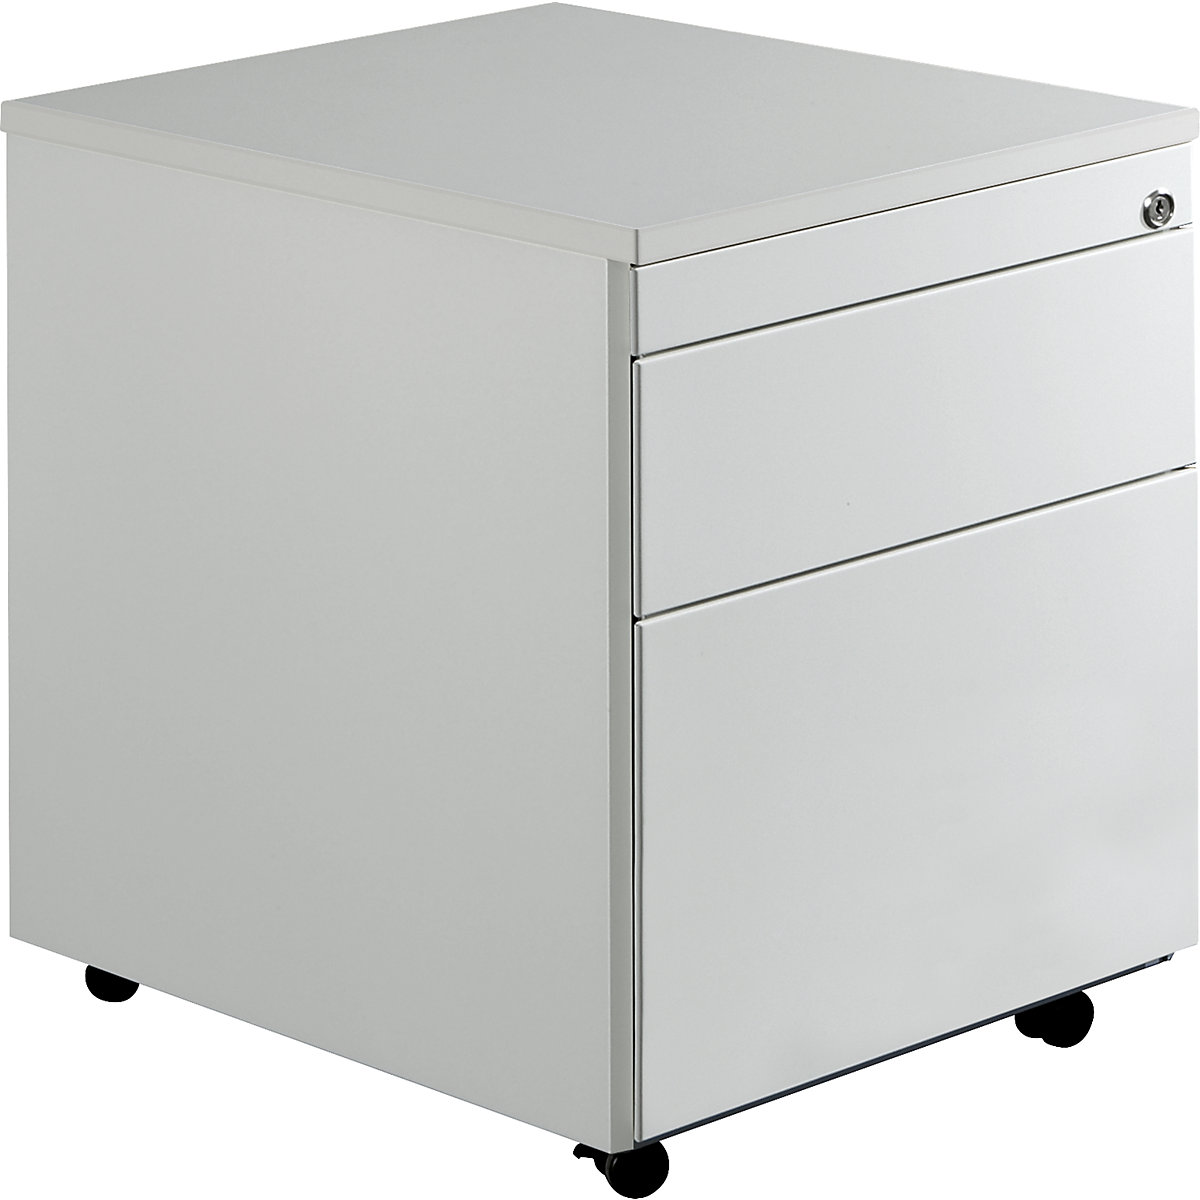 Zásuvkový kontajner s kolieskami – mauser, v x š 579 x 600 mm, 1 zásuvka na materiál, 1 závesná registratúra, svetlošedá / svetlošedá / svetlošedá-3